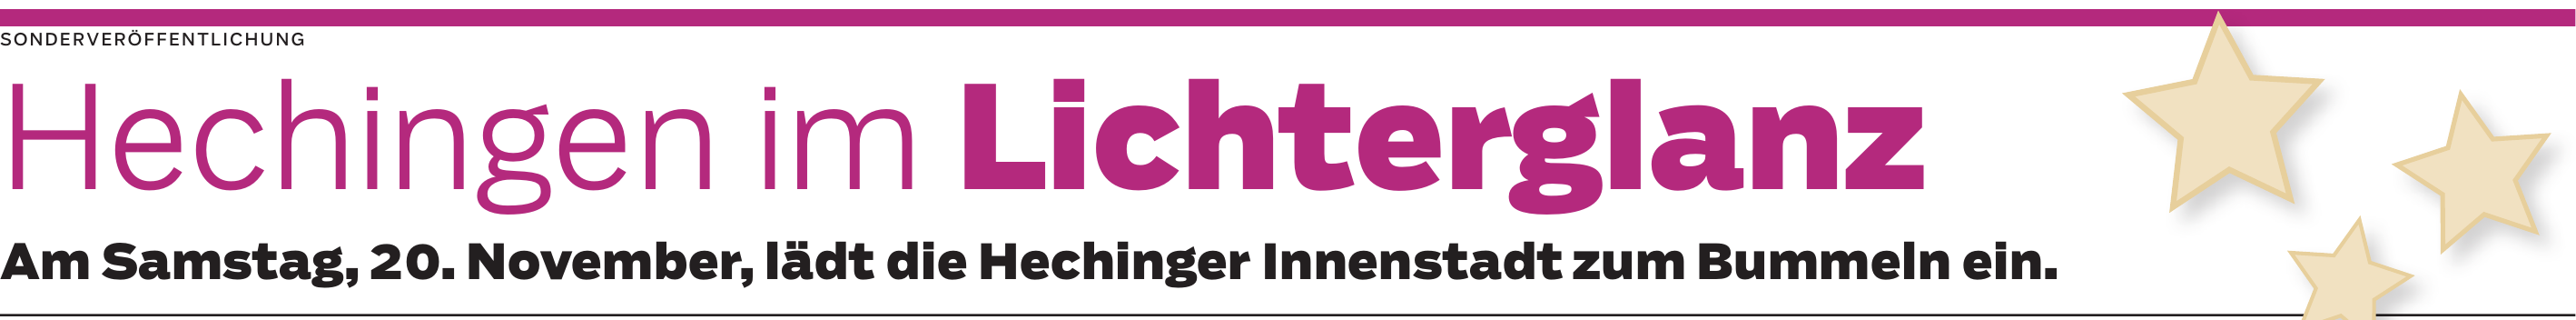 Hechinger Stadtmarketing-Verein: Glühwein für Geimpfte und Genesene